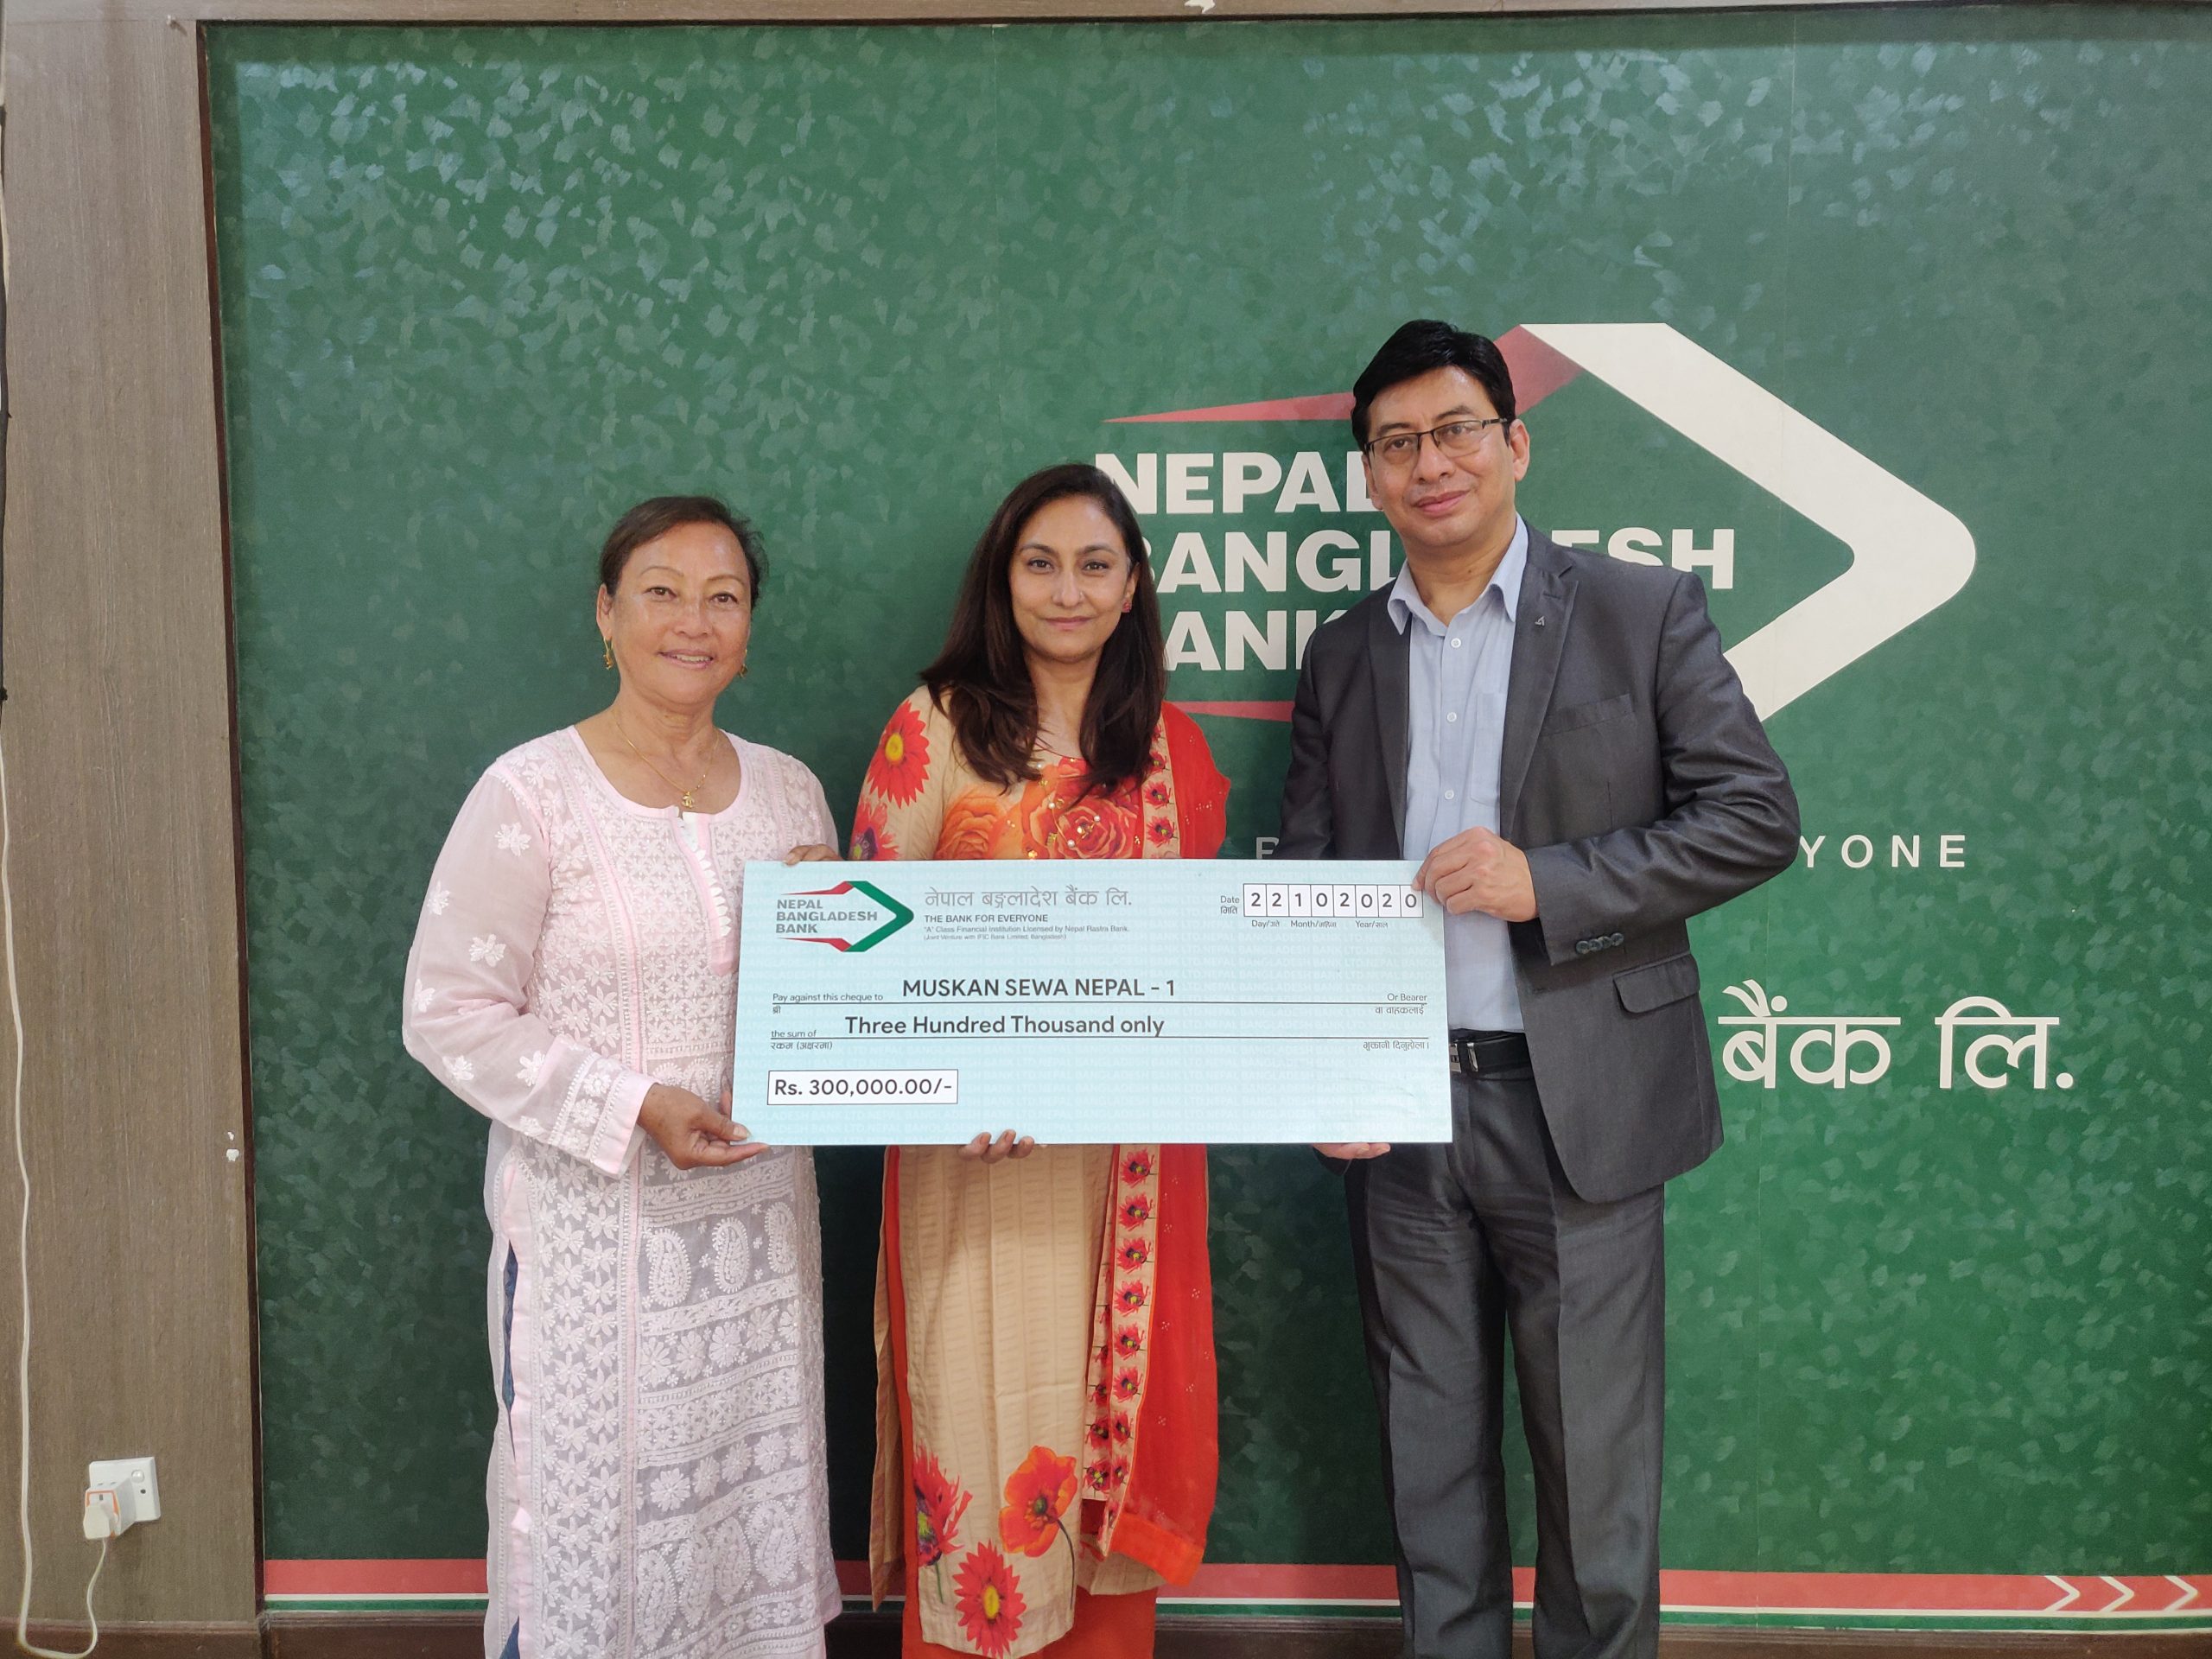 नेपाल बङ्गलादेश बैंकद्वारा मुस्कान सेवा नेपाललाई रकम हस्तान्तरण